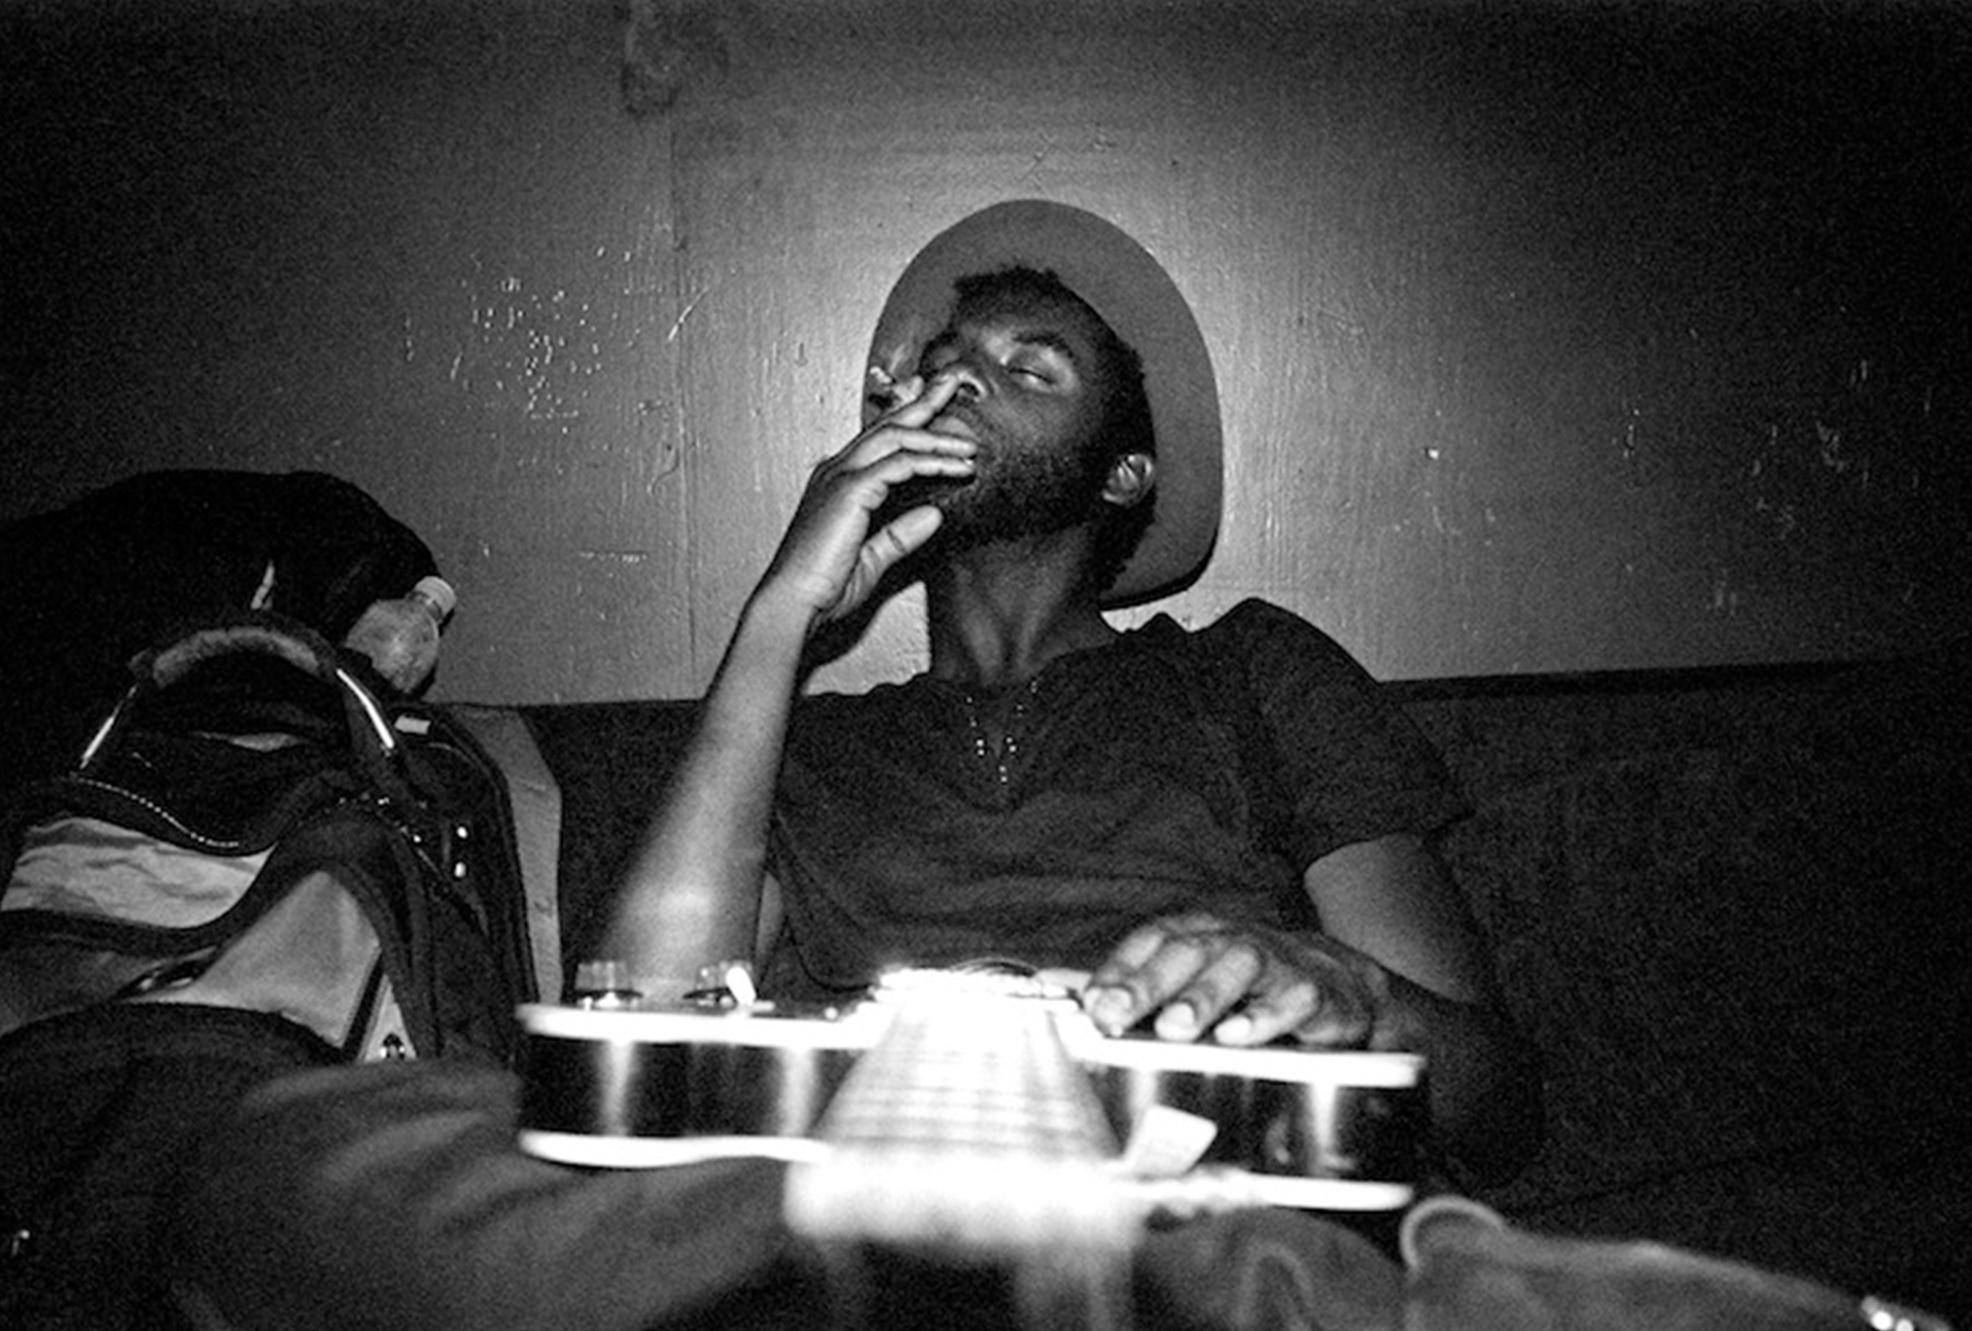 Ben Sklar Black and White Photograph - Gary Clark Jr backstage Troubadour portrait